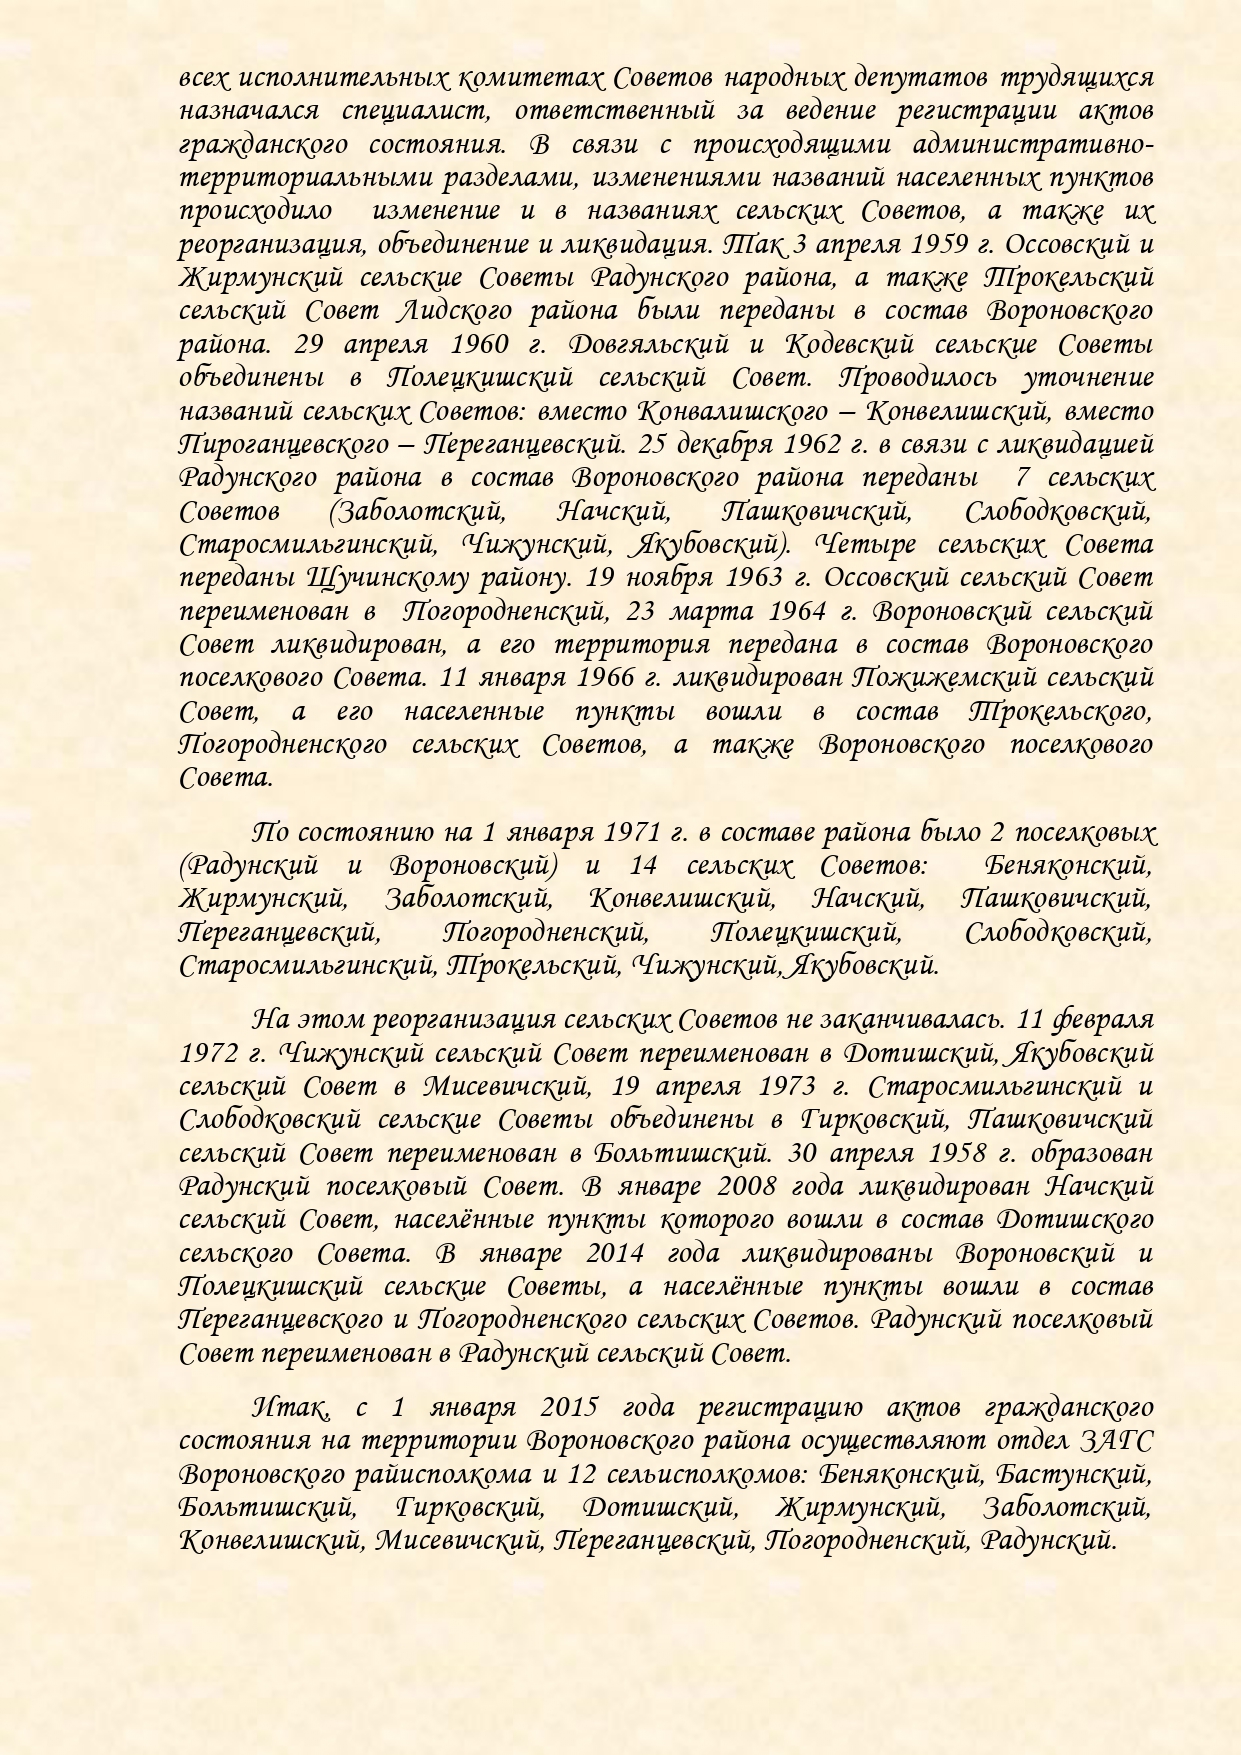 История органов загса Вороновского района с изменениями (1)_page-0003.jpg